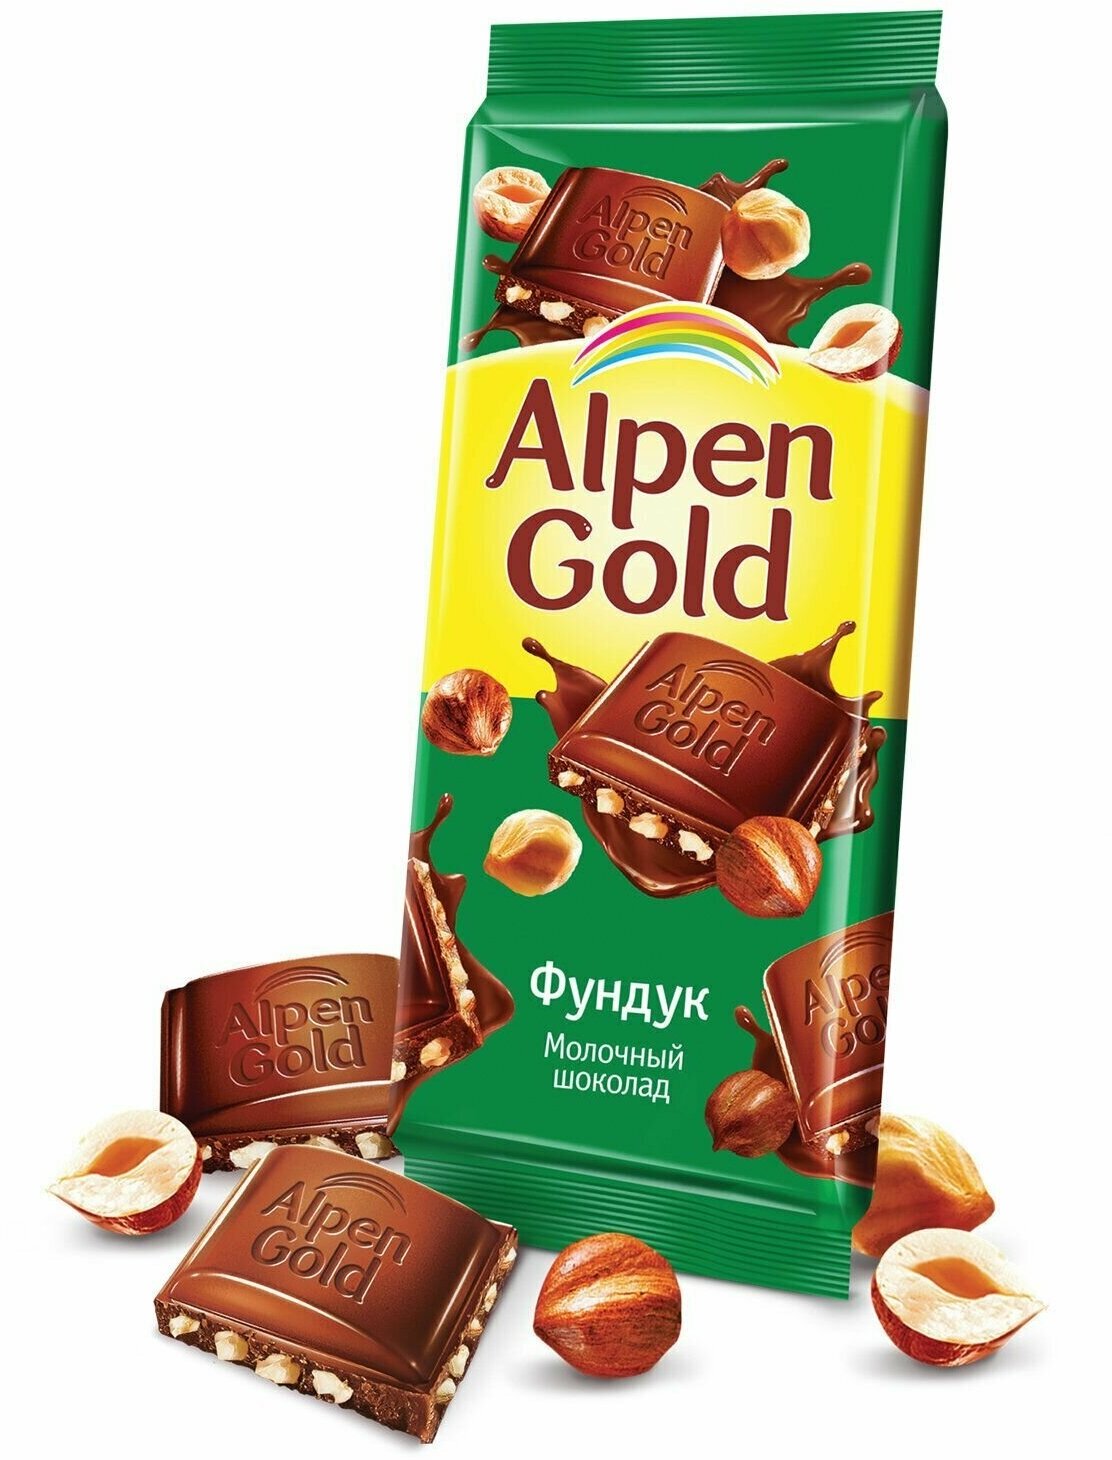 Шоколад Alpen Gold "Фундук" молочный, 85гр - фото №6